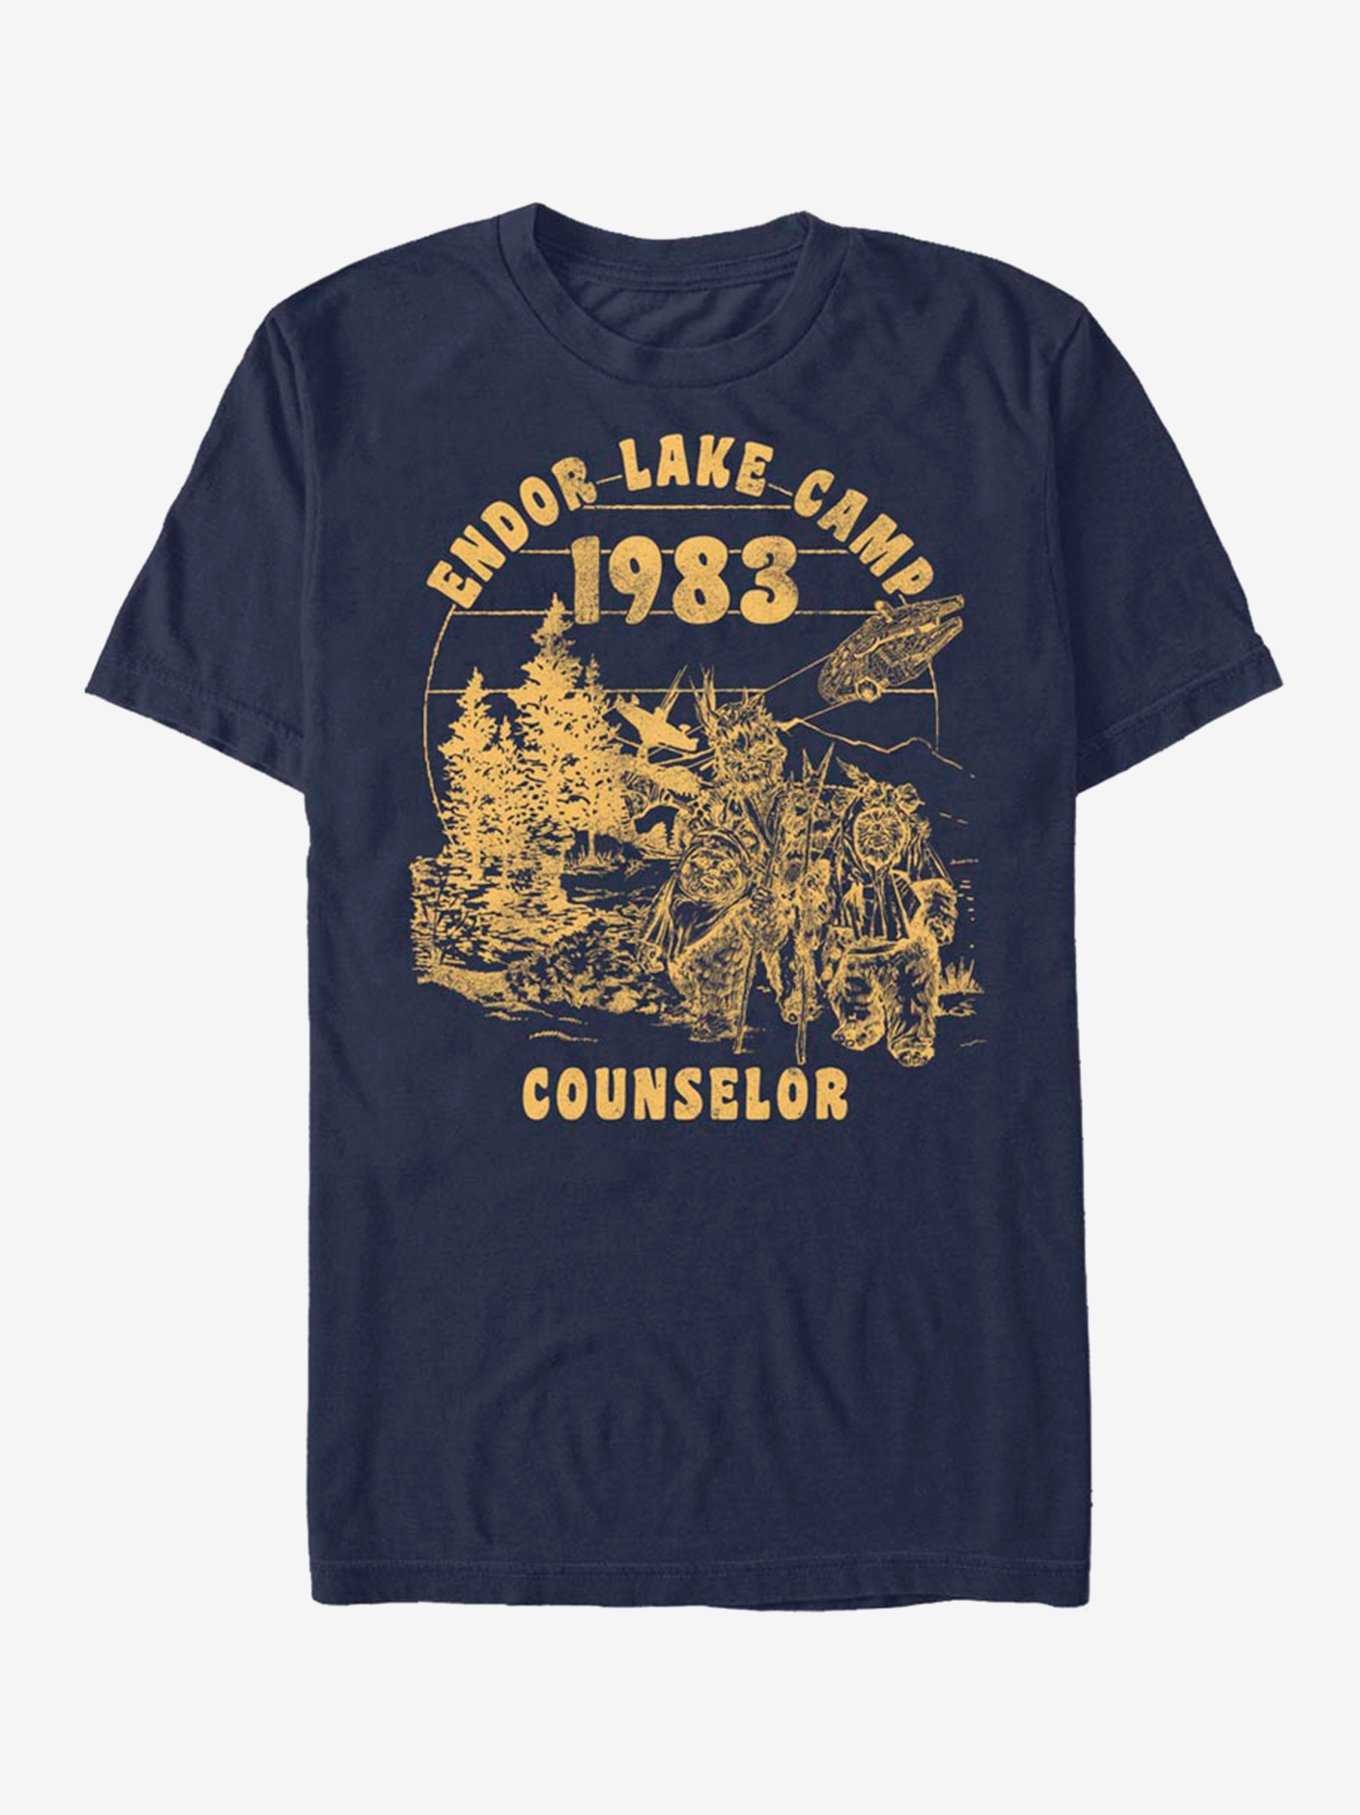 Star Wars Ewok Endor Camp Counselor T-Shirt, , hi-res